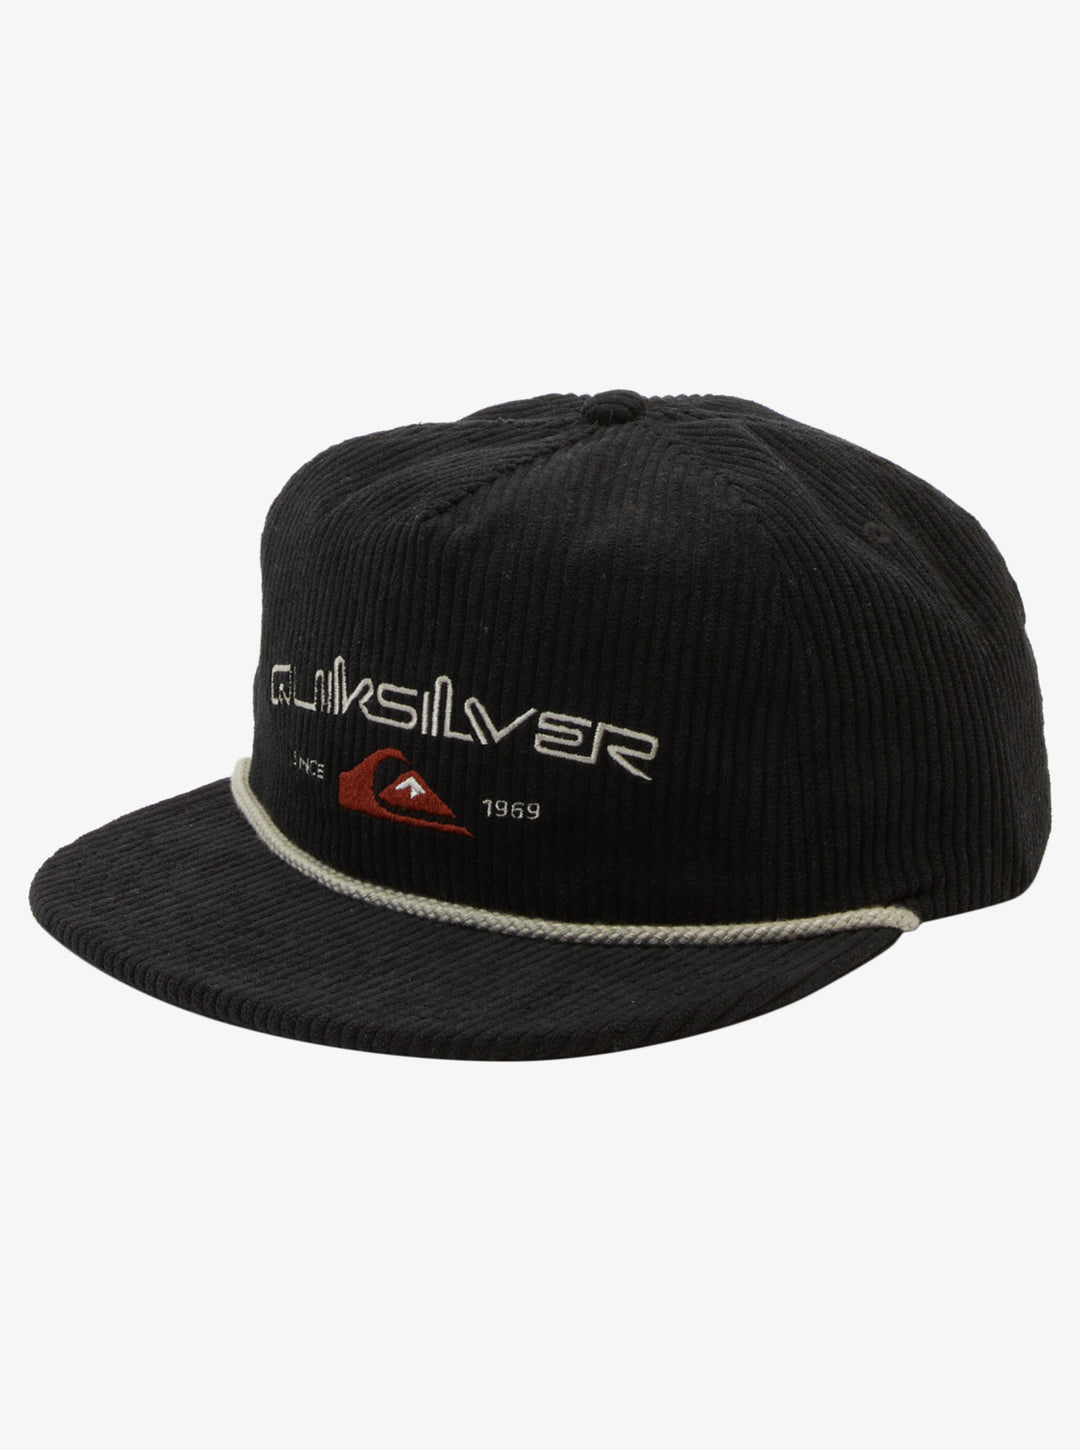 Quiksilver Cordonado Trucker Hat - Black - Sun Diego Boardshop